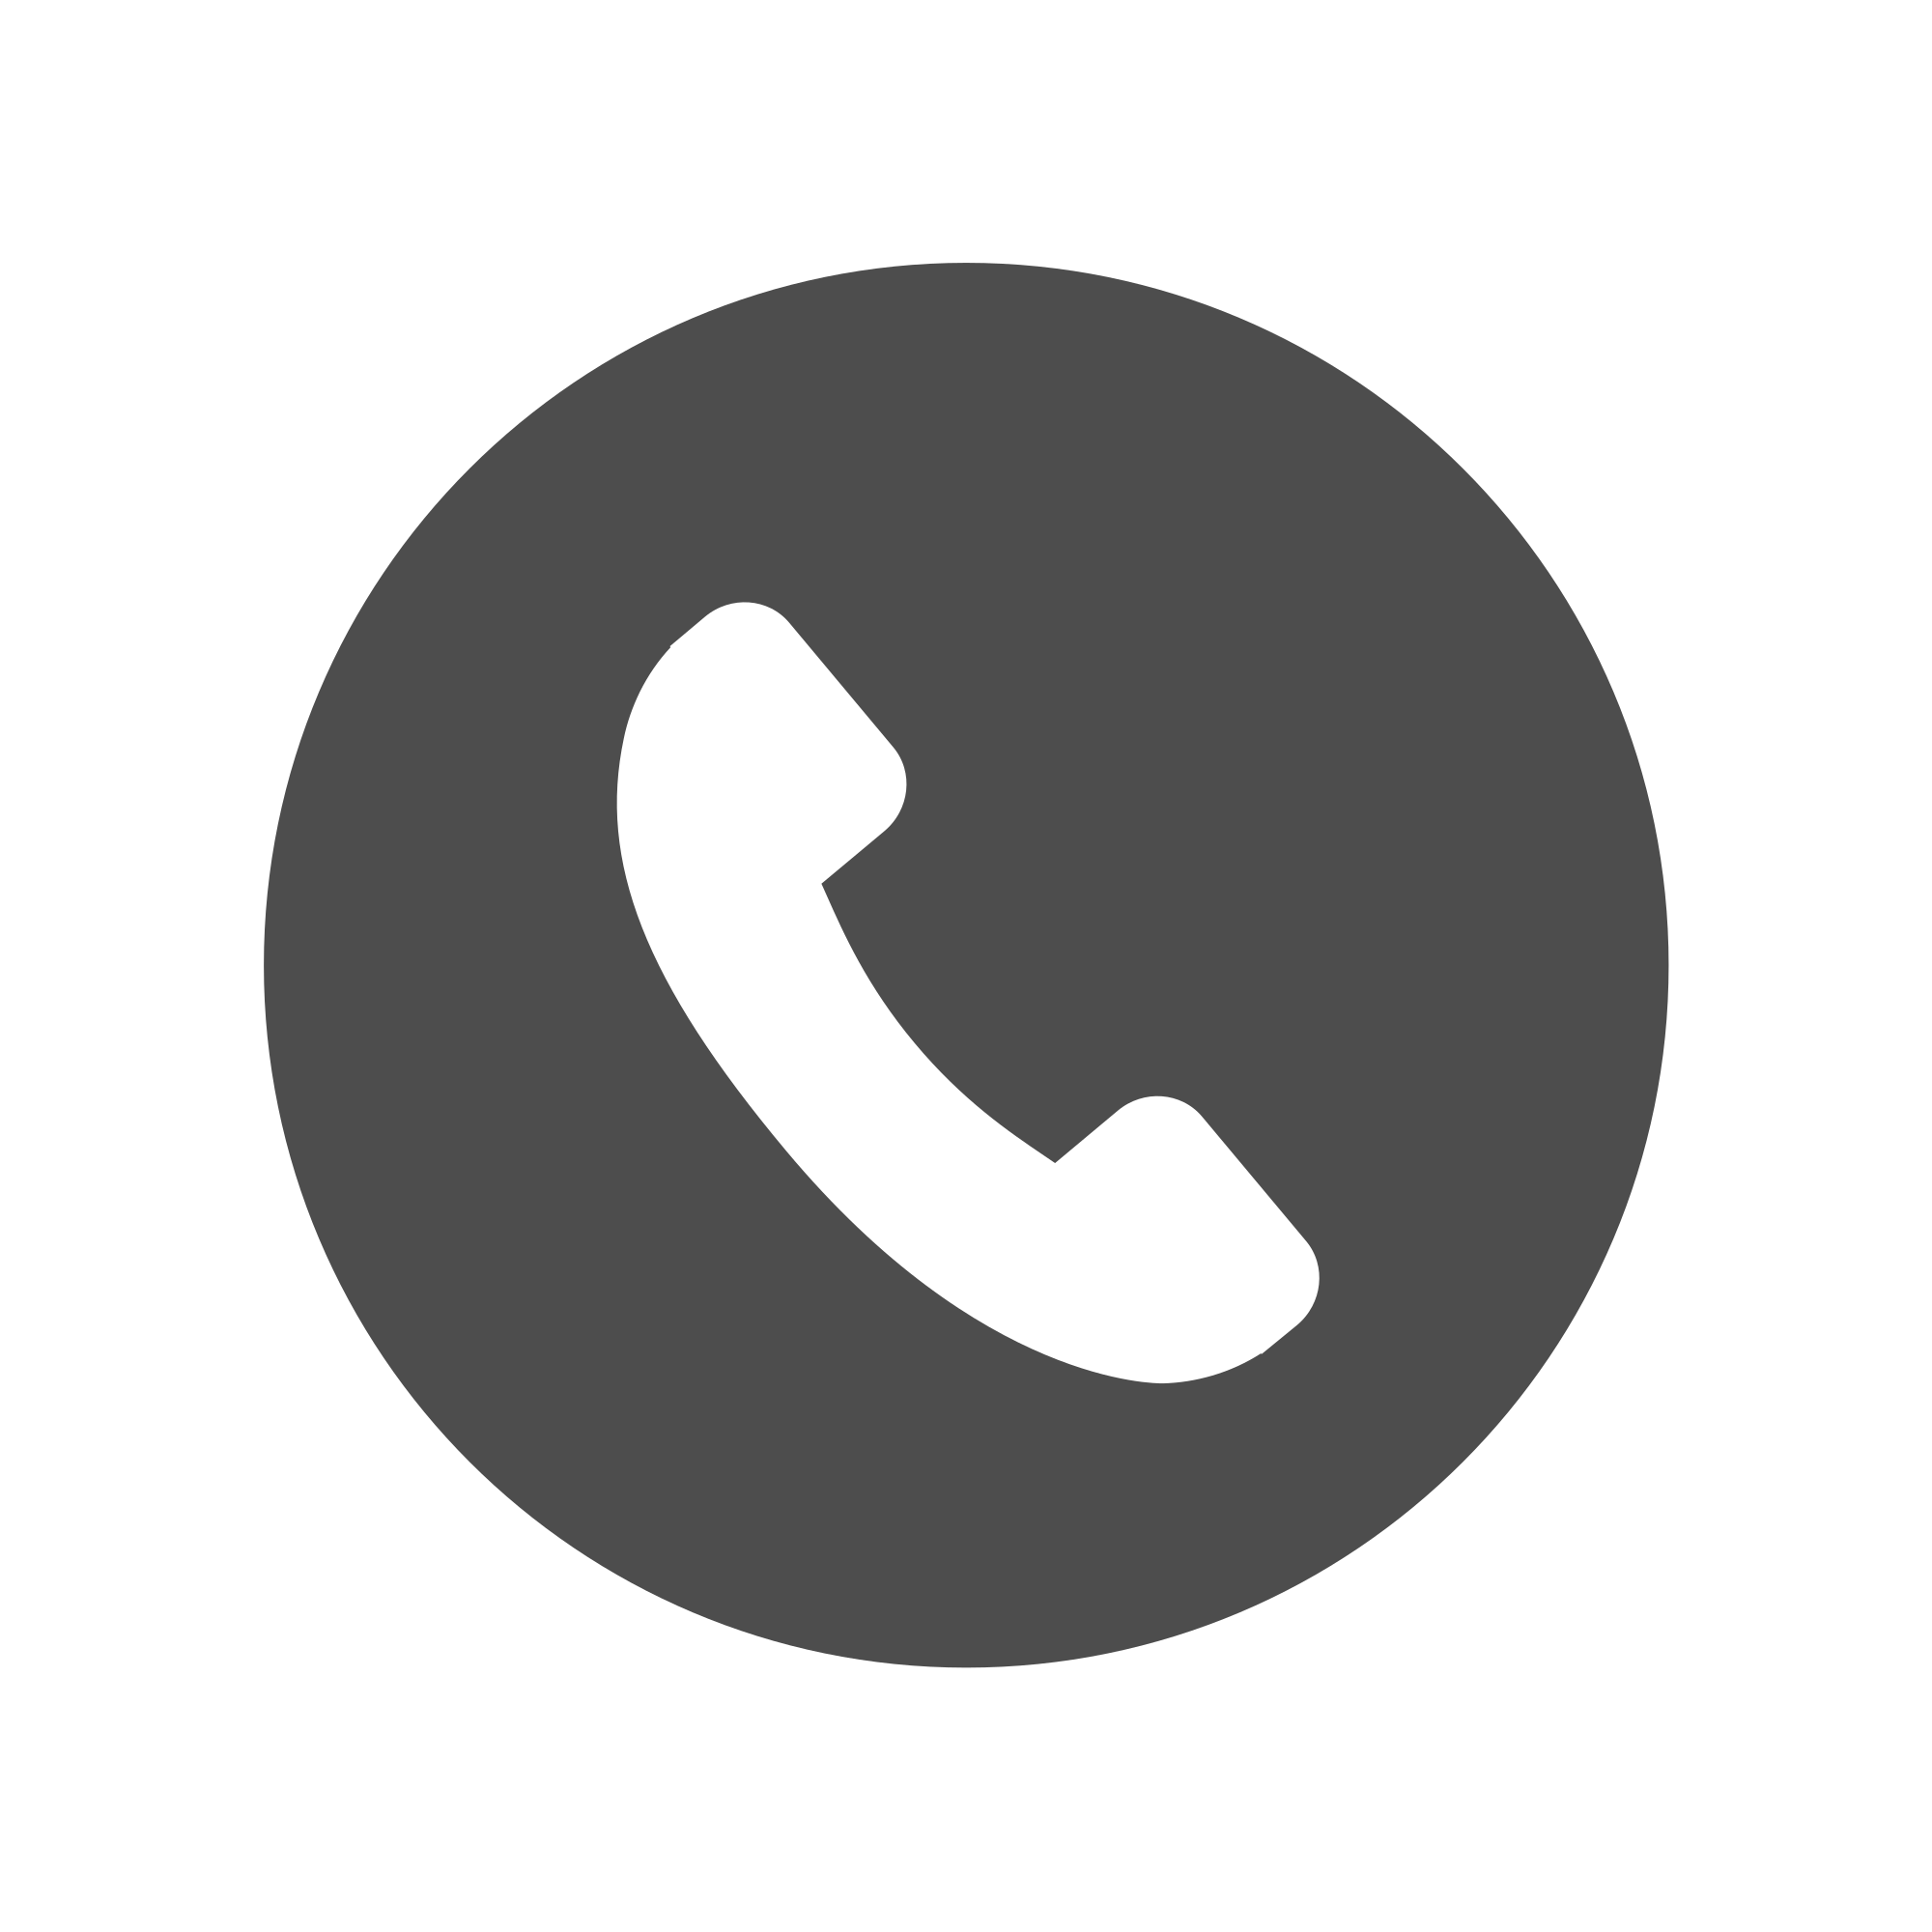 Calling icon. Значок телефона. Иконка звонка. Логотип звонка. Звонки иконка.